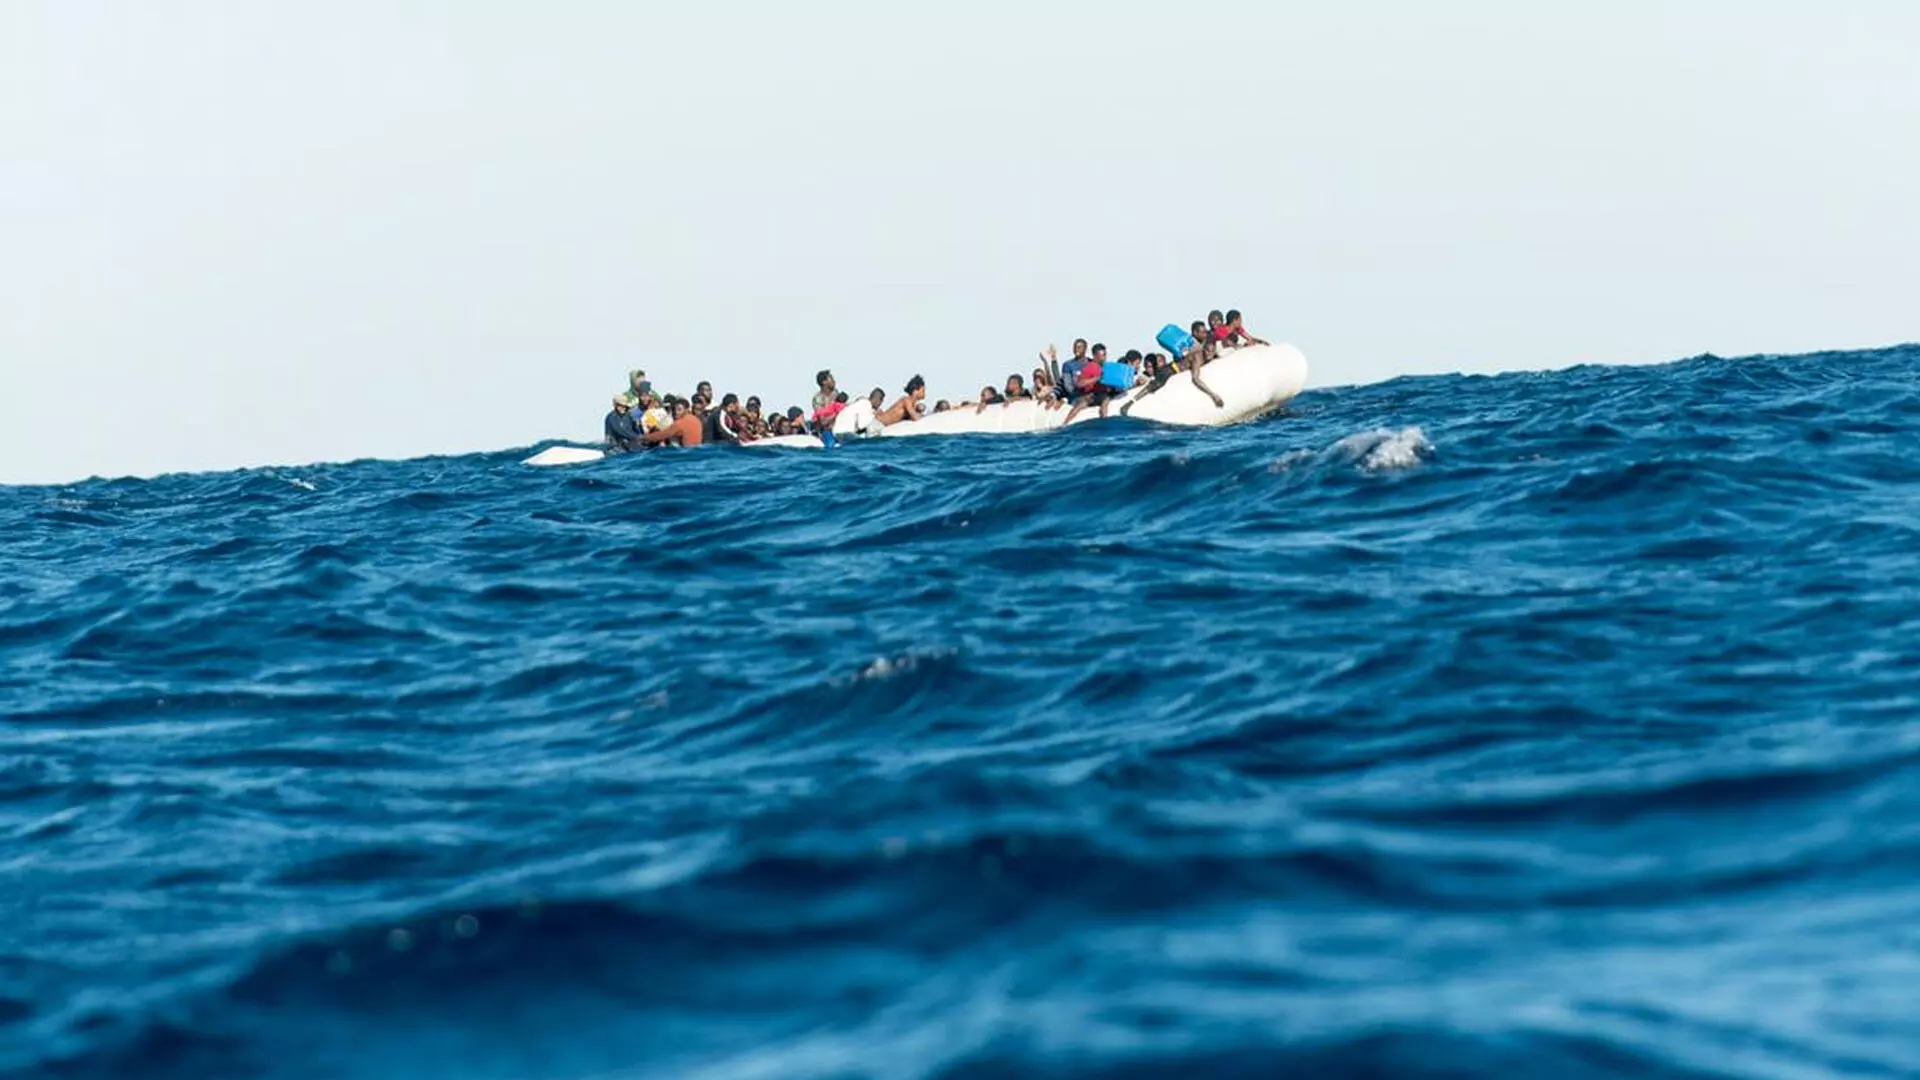 भूमध्य सागर में 50 प्रवासियों के मरने की आशंका